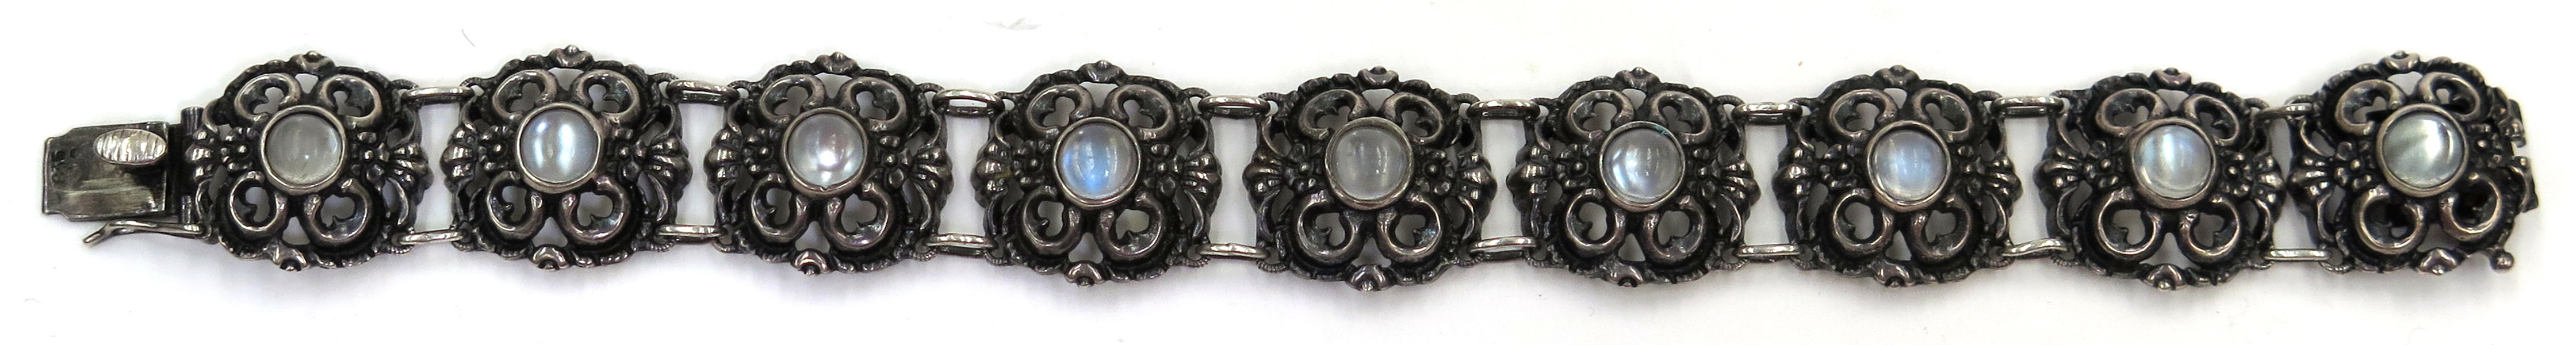 Okänd designer, 1920-tal, armband, silver med cabochonslipade månstenar, _2613a_8d859702b280f7c_lg.jpeg